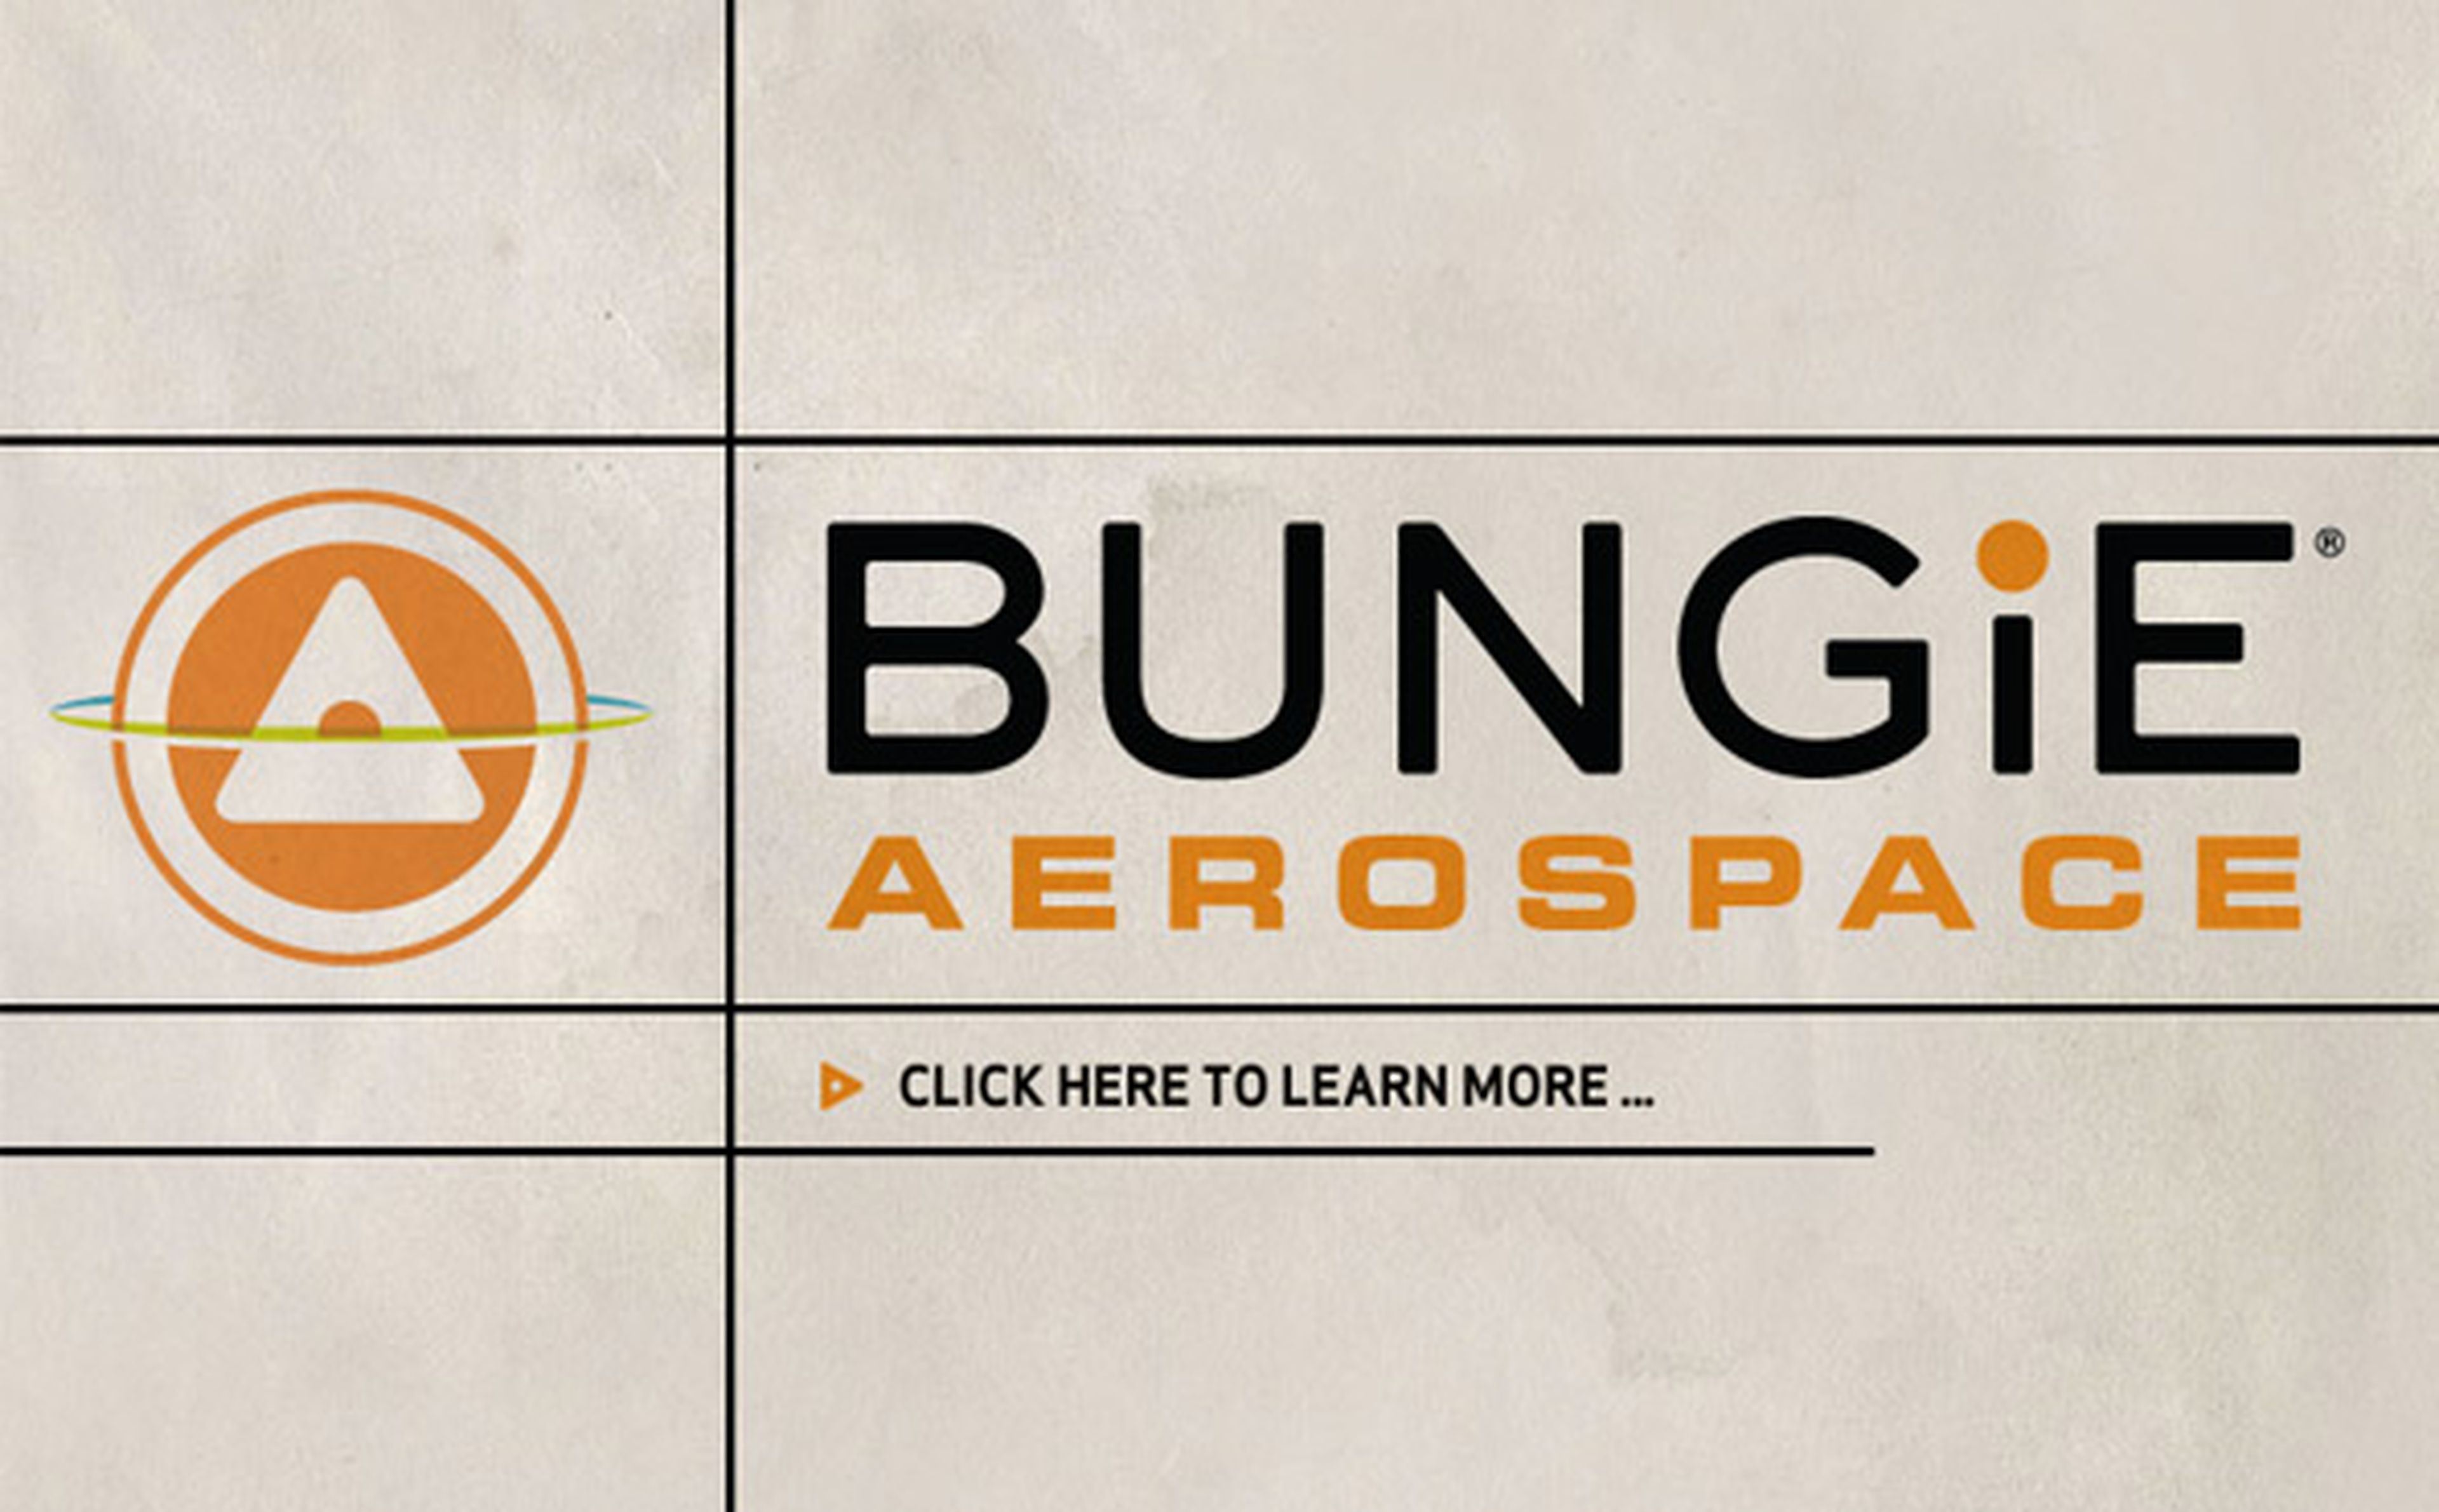 Desvelado el secreto de Bungie Aerospace